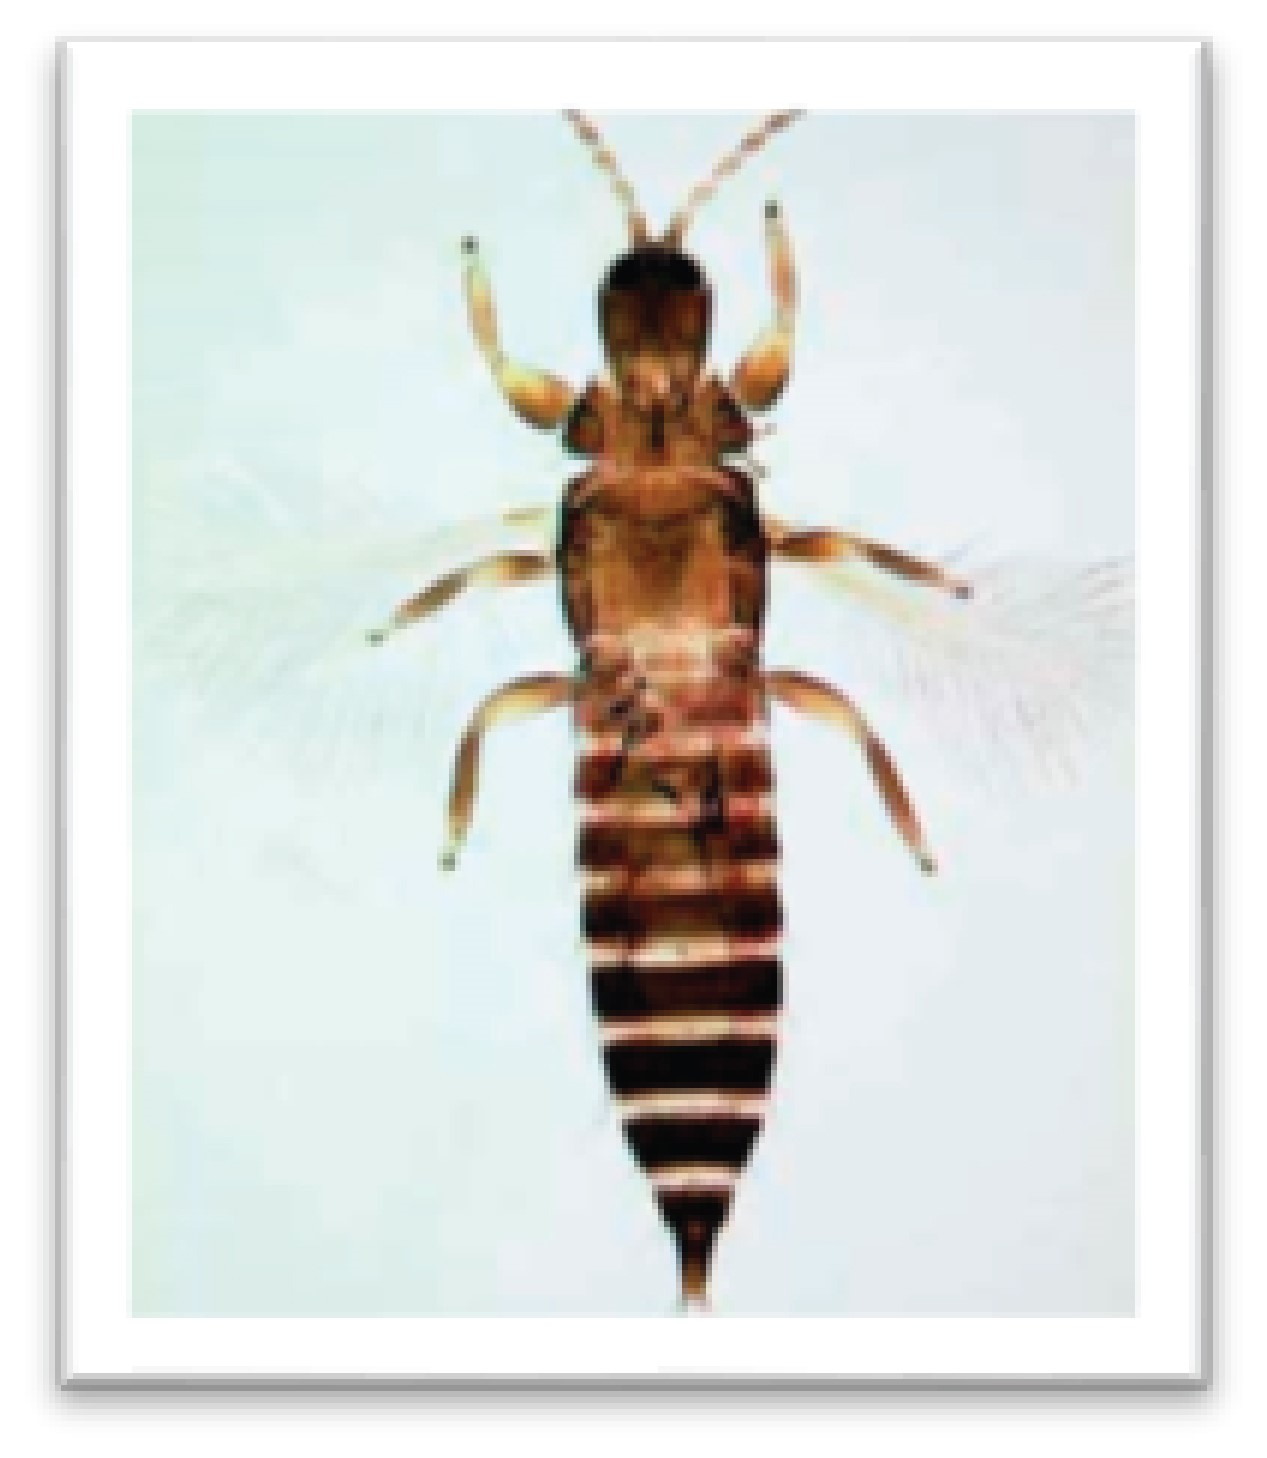 Bọ trĩ là côn trùng nguy hại thường có có mặt phá hoại chanh dây.